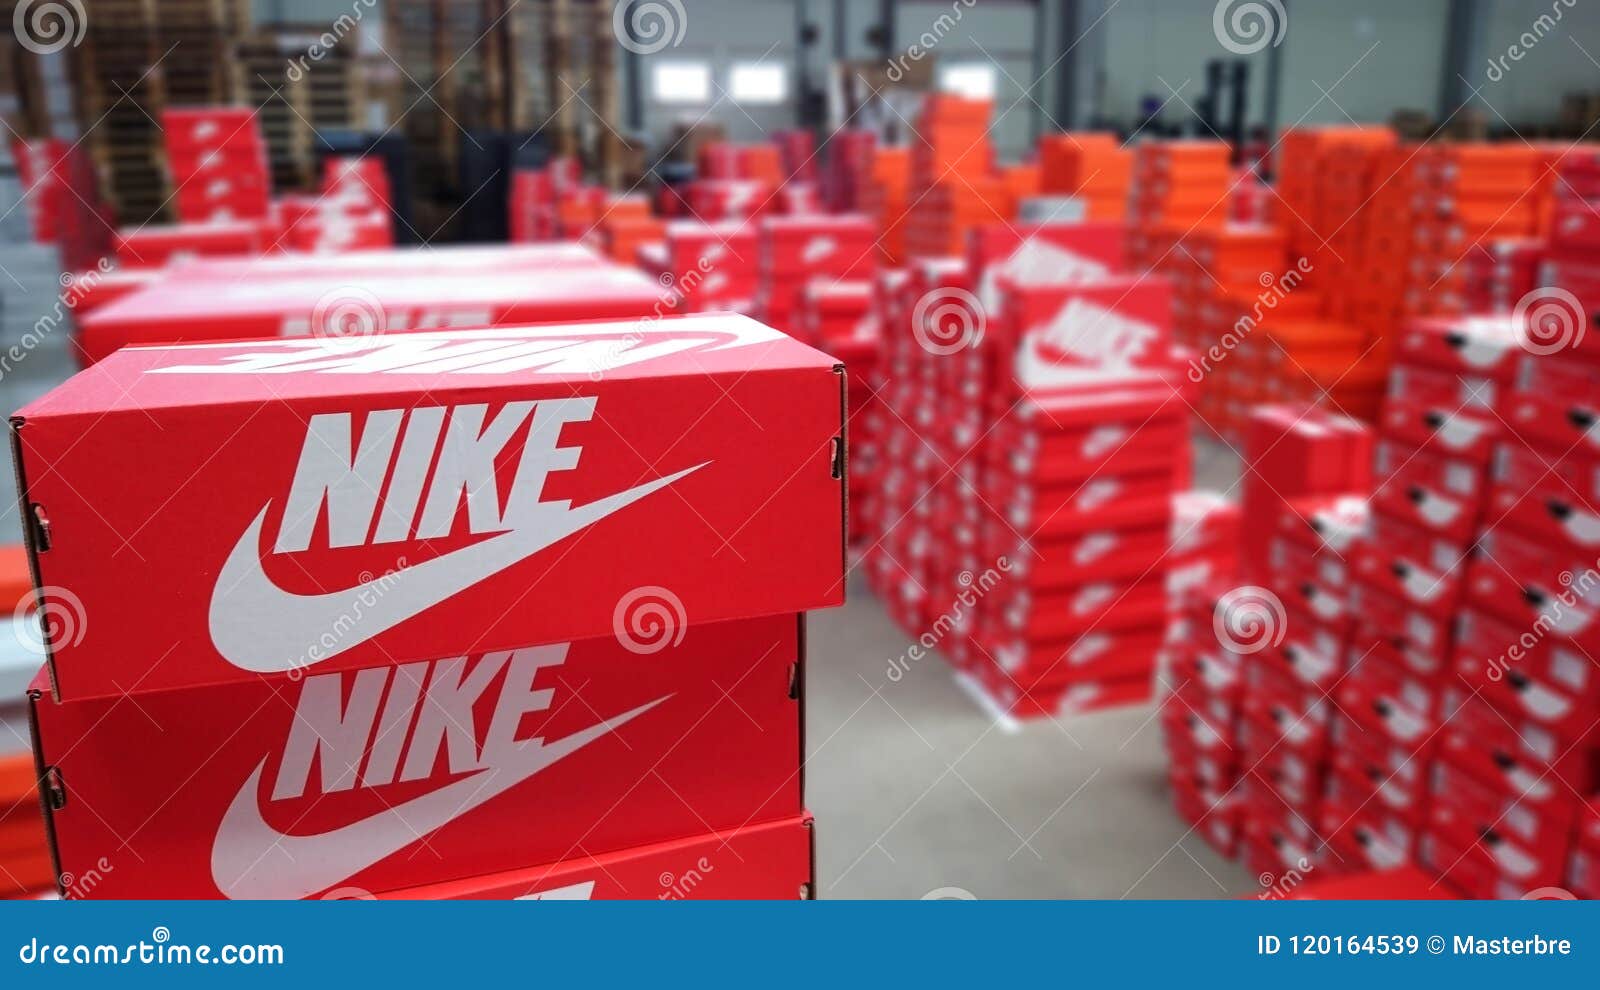 Cajas De Las Zapatillas De Nike En Almacén de archivo - Imagen de imagen, cierre: 120164539